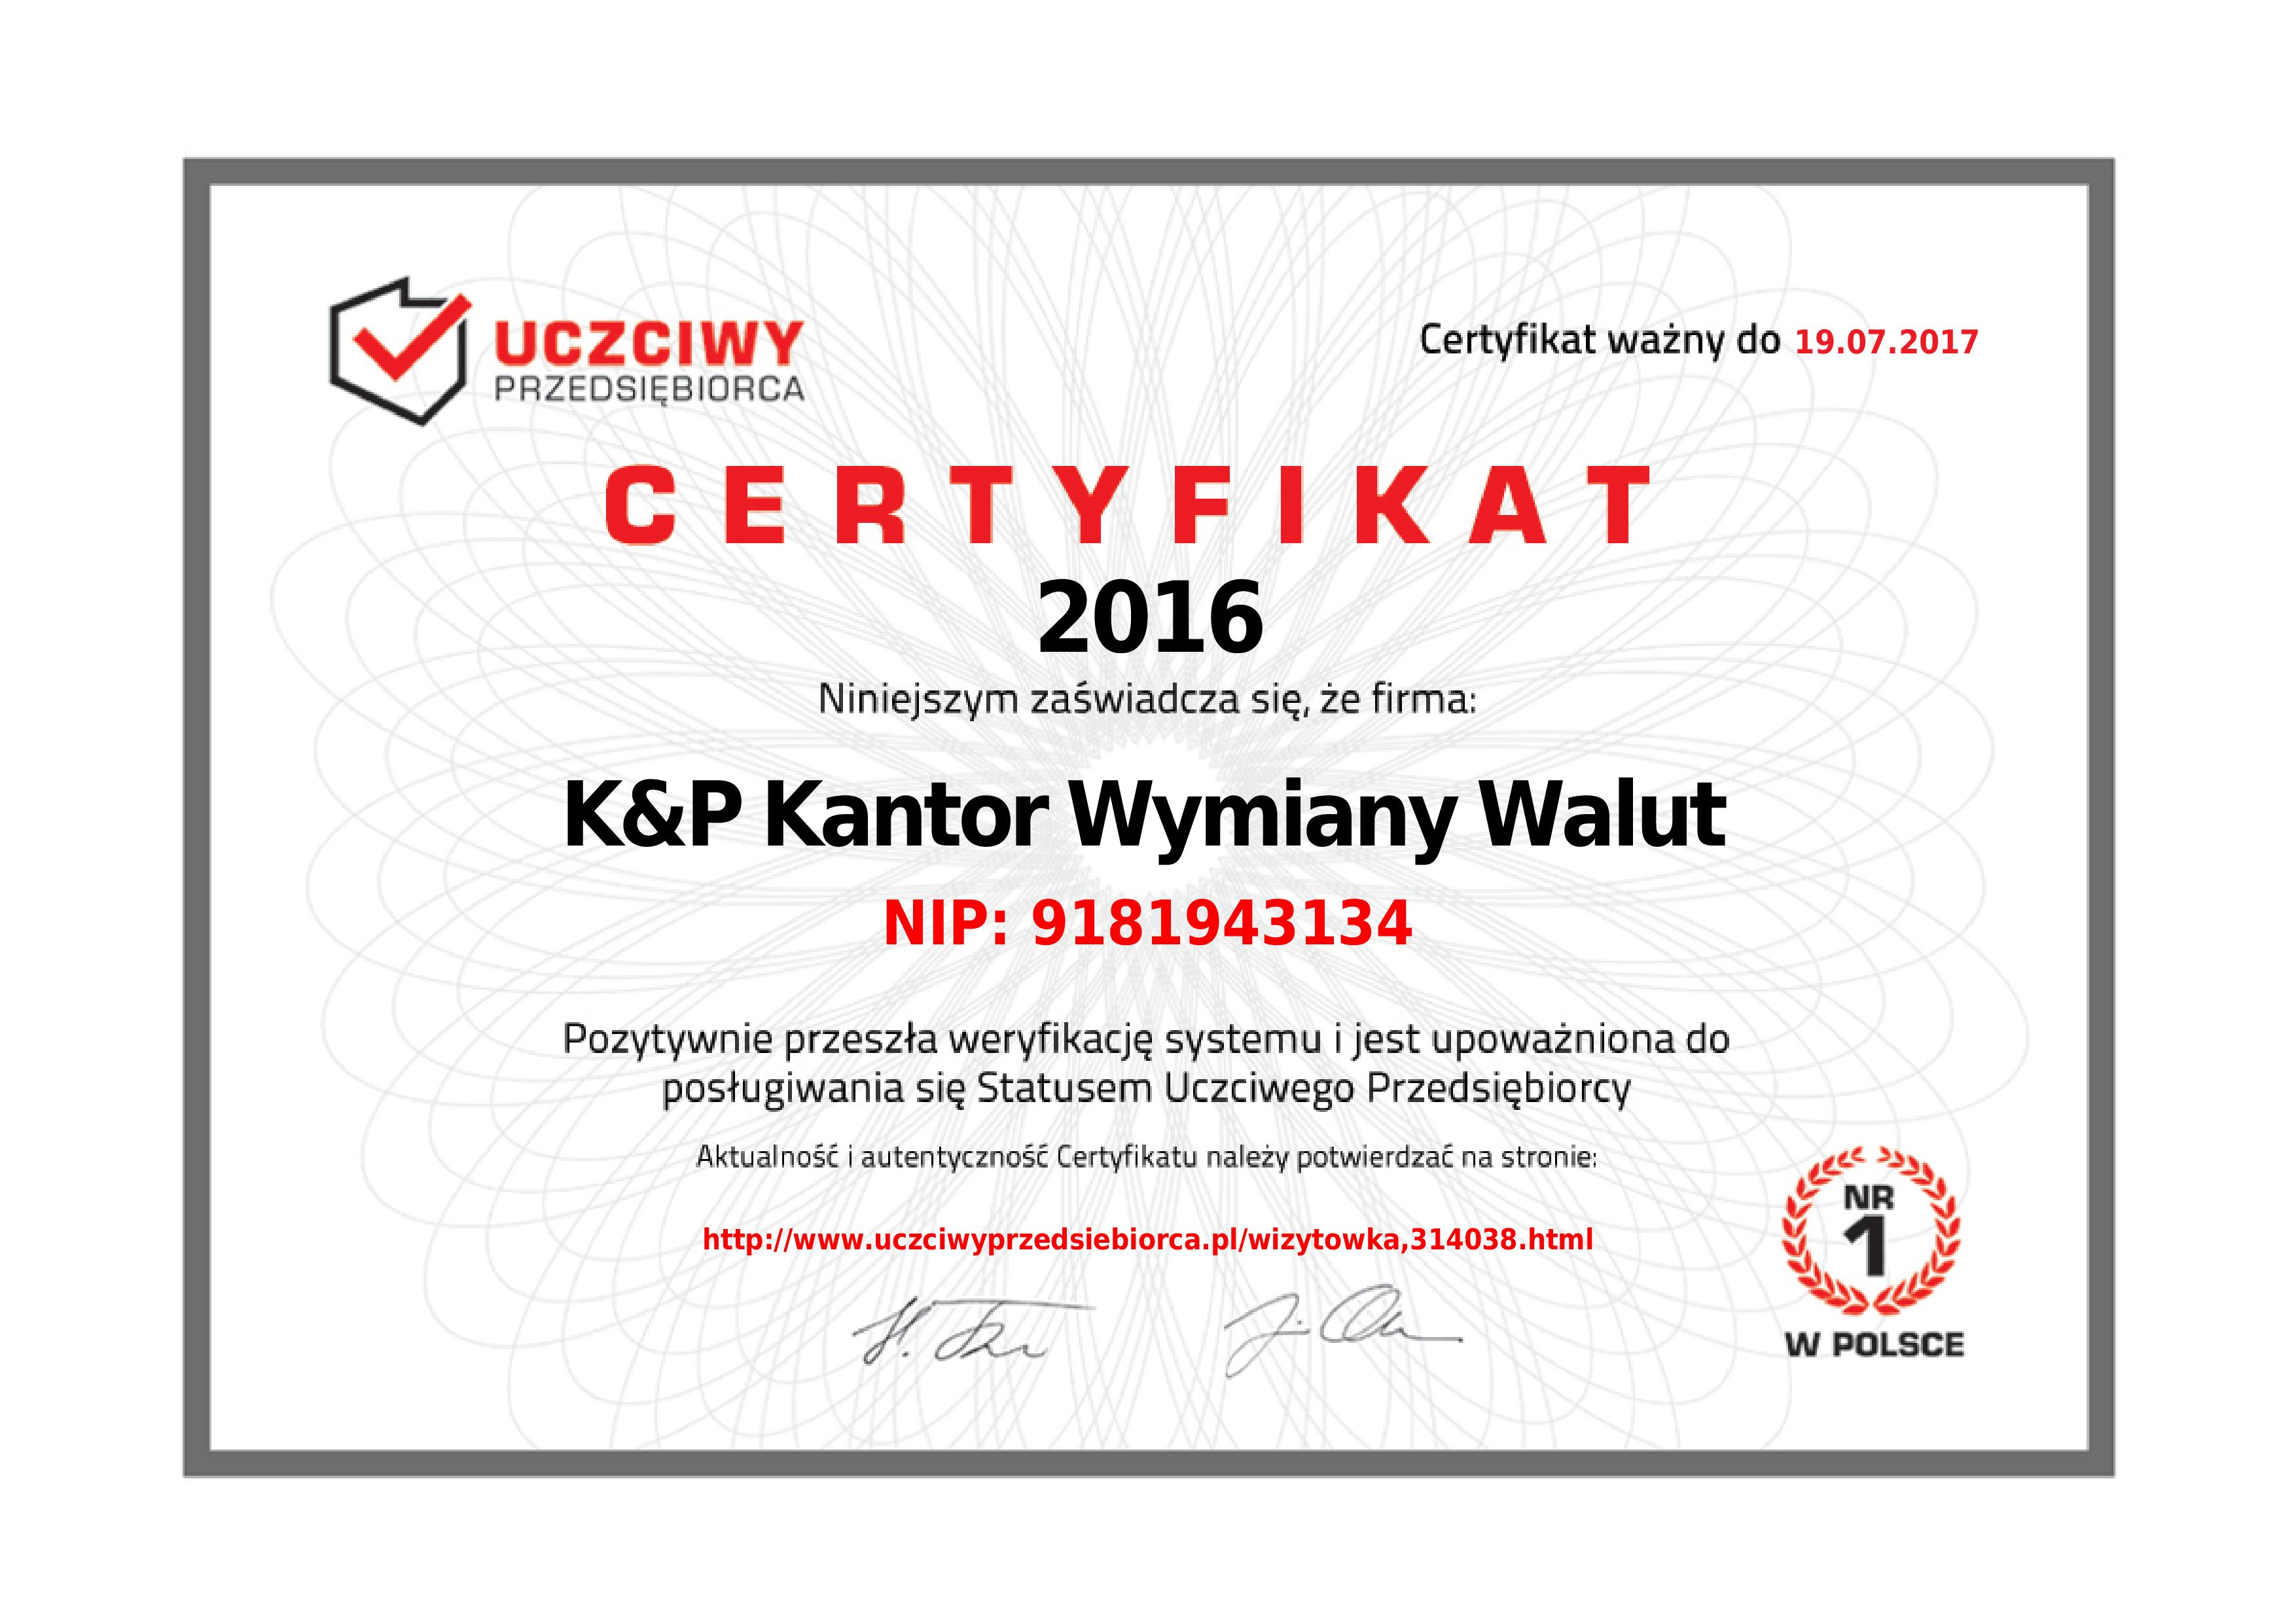 Ogólnopolski Certyfikat Uczciwy Przedsiębiorca jest wyróżnieniem dla firmy rzetelnej i godnej zaufania.